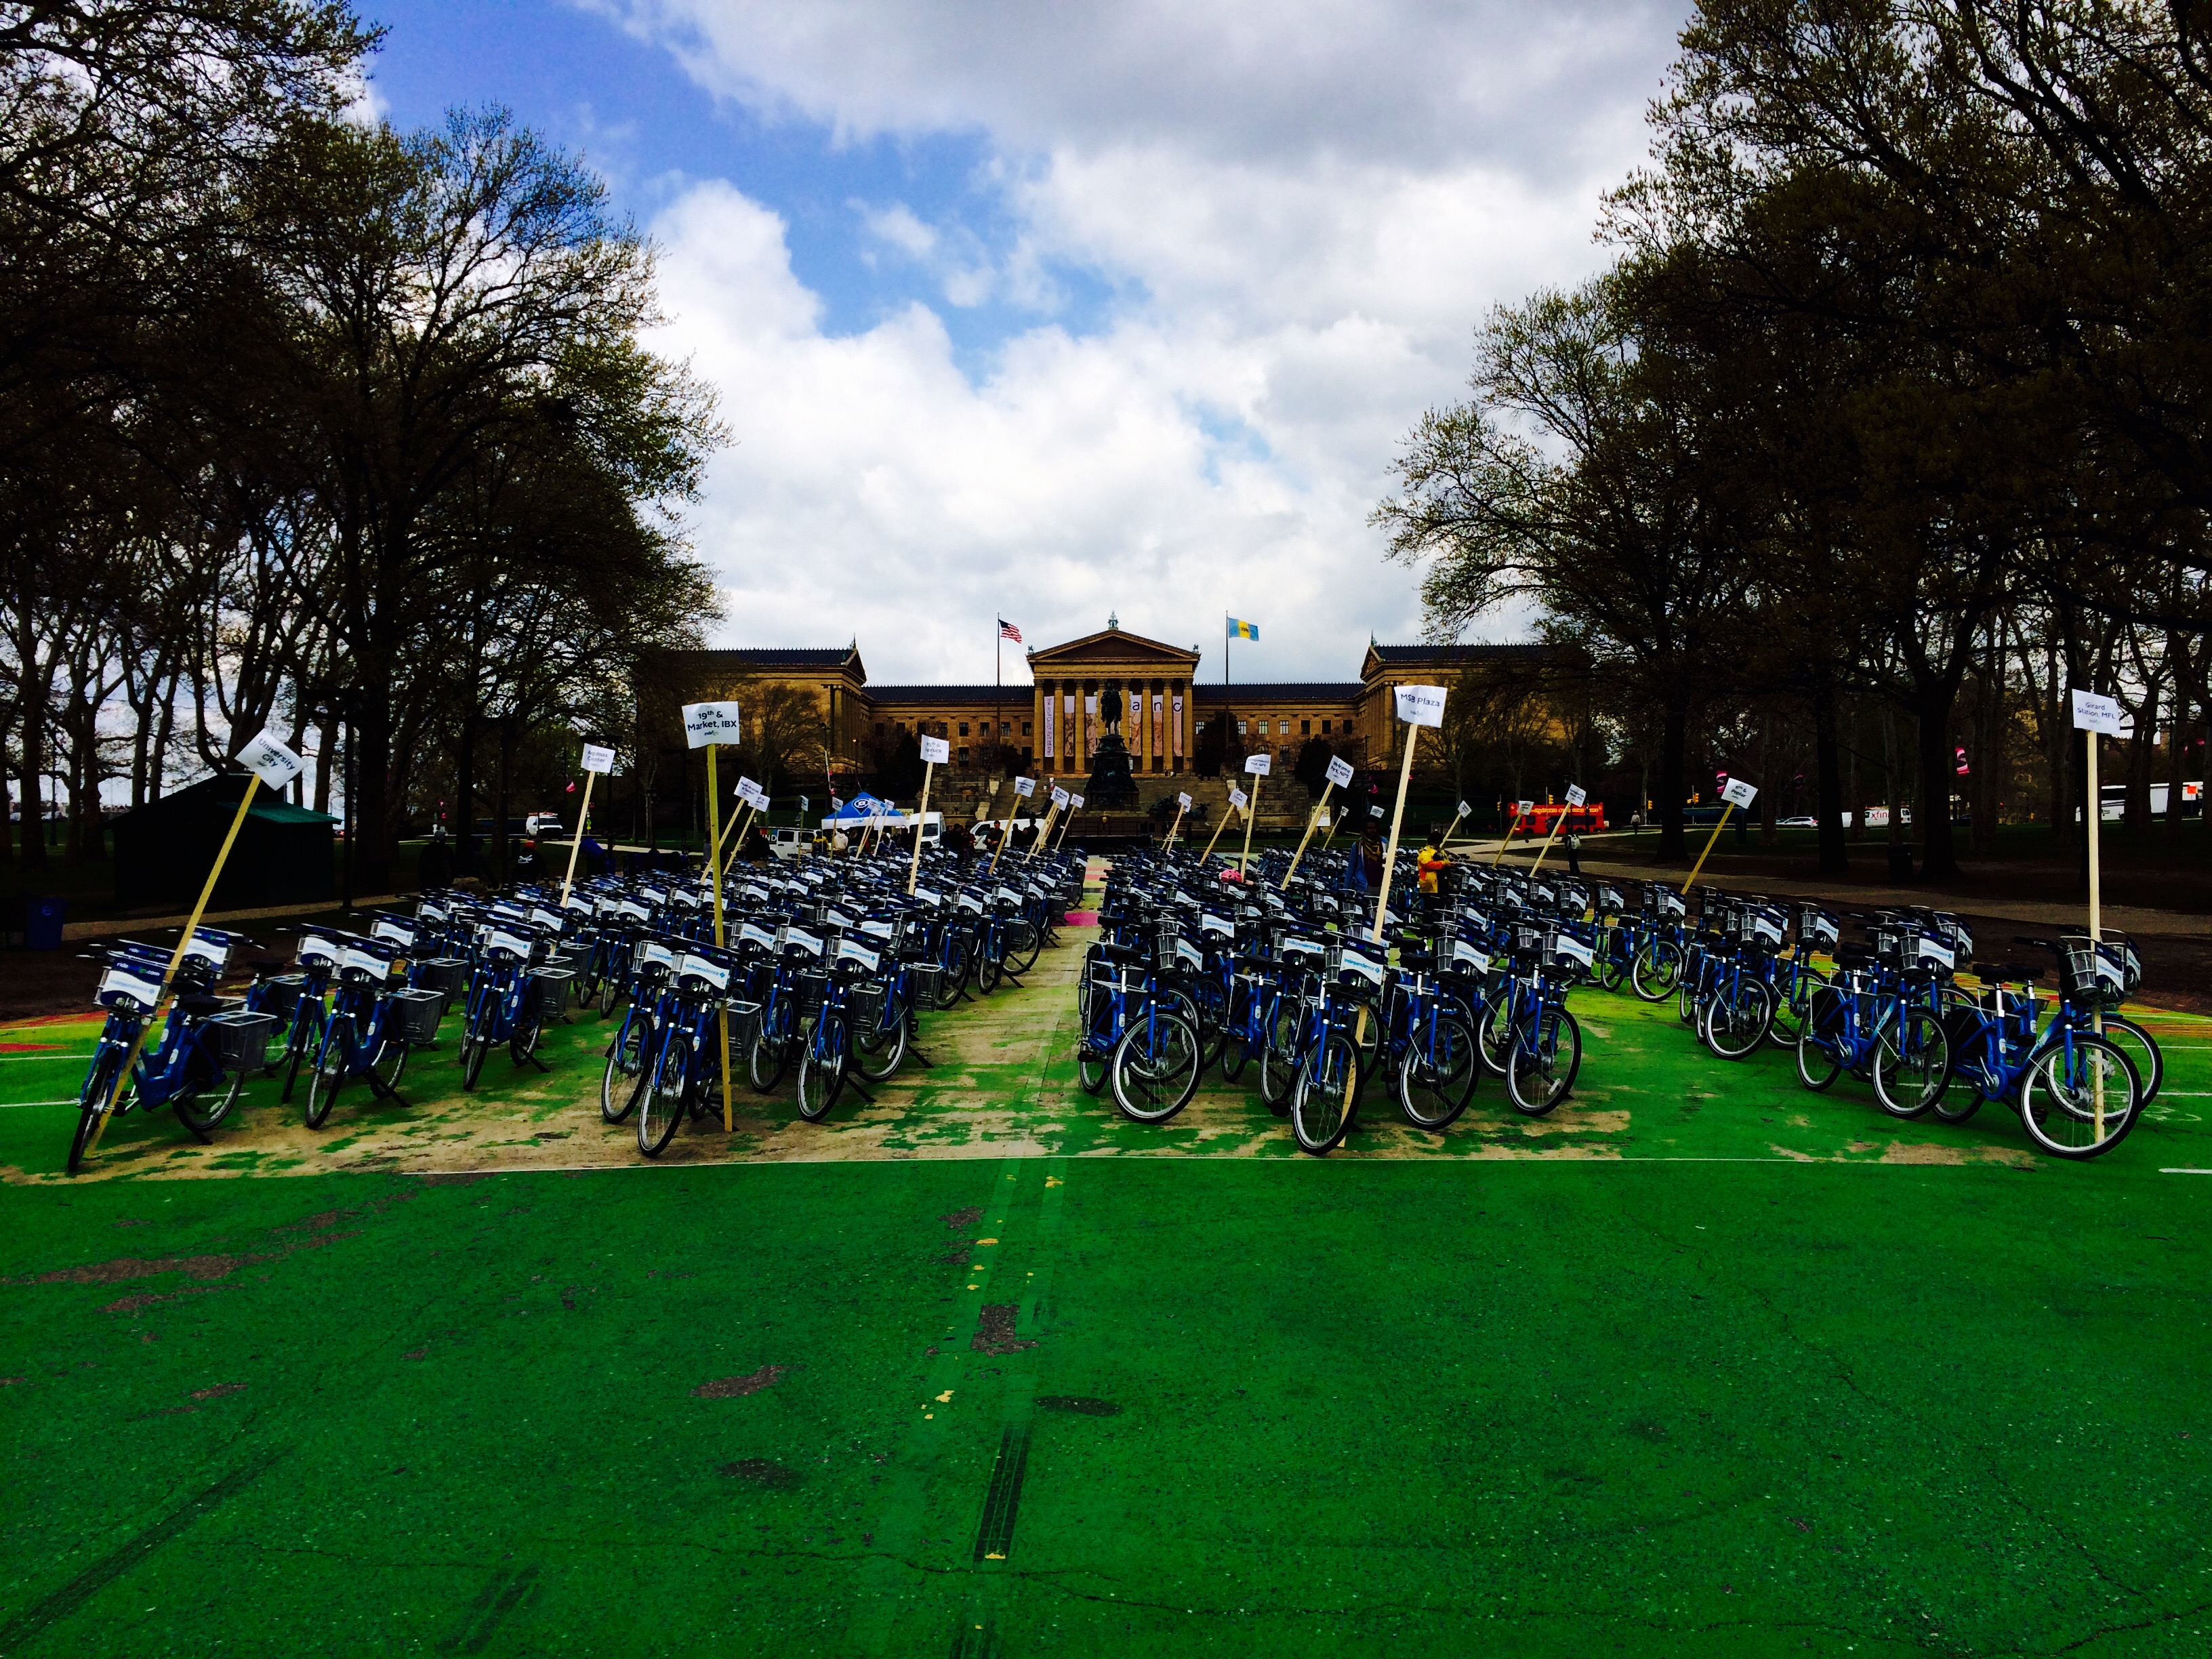 Indego Bikes on Eakins Oval